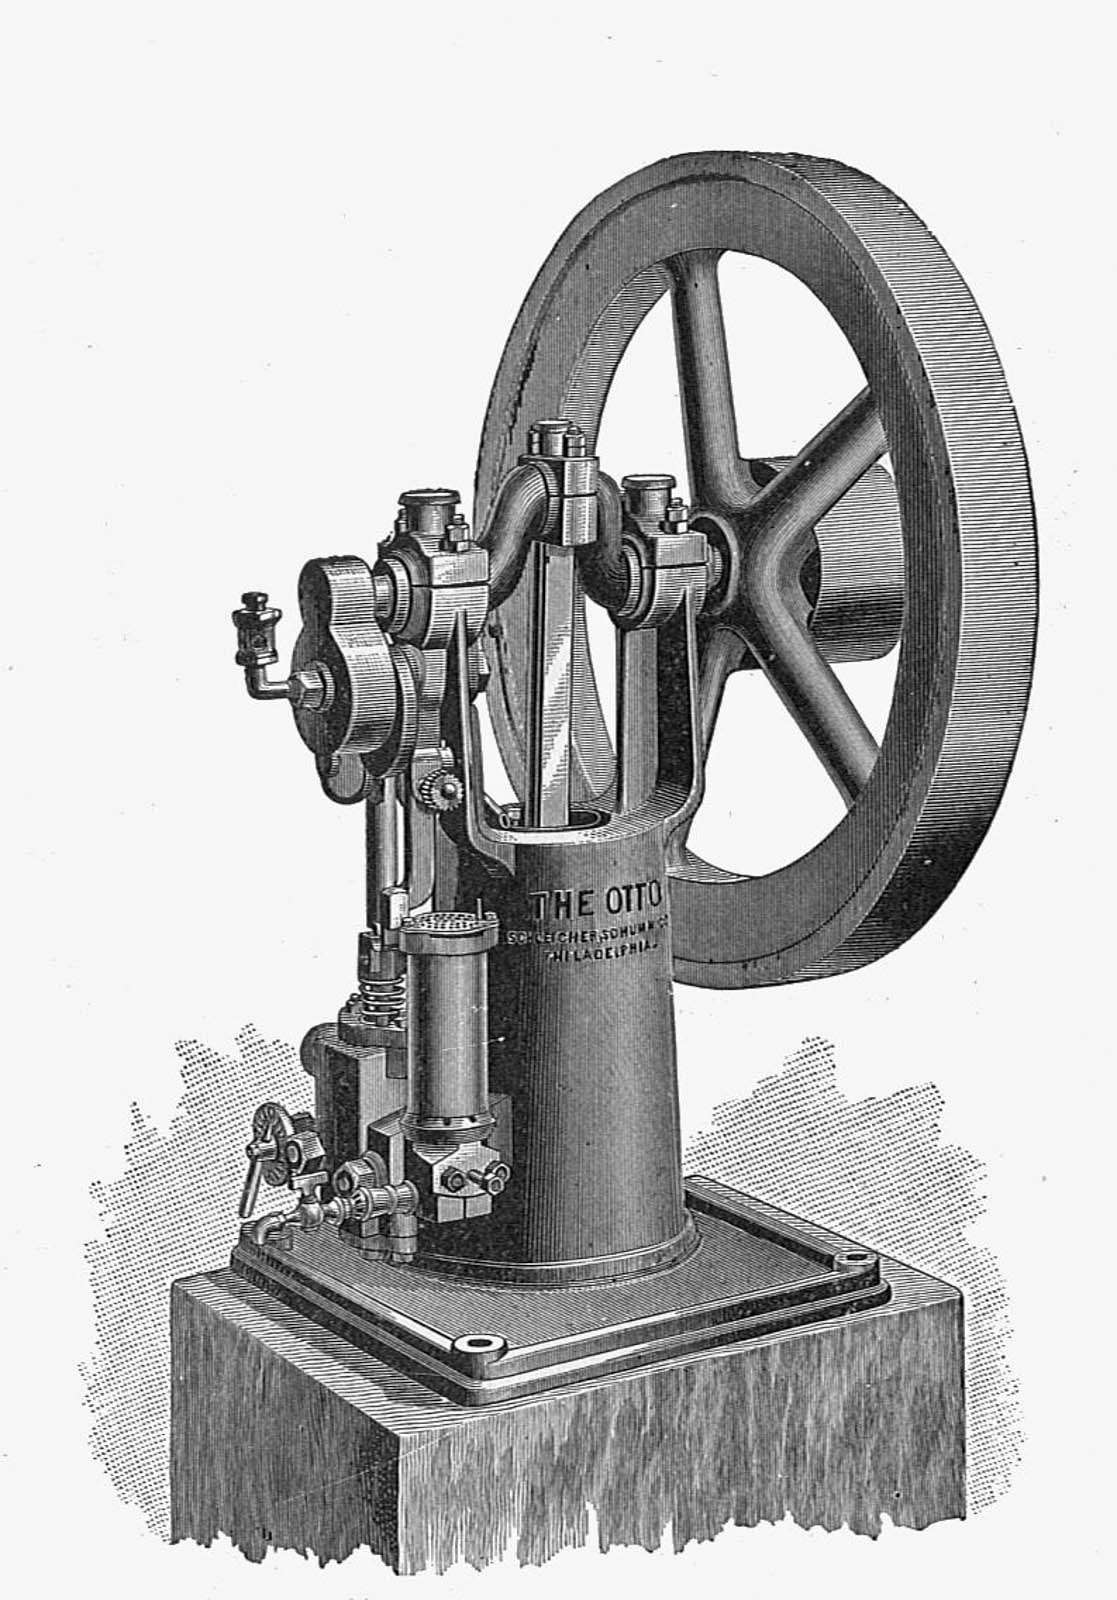 Первый рабочий двигатель с четырехтактным циклом, который сегодня используется почти на всех автомобилях, был построен немецким инженером Николаусом Отто. Потому четырехтактный цикл известен сегодня и как цикл Отто.